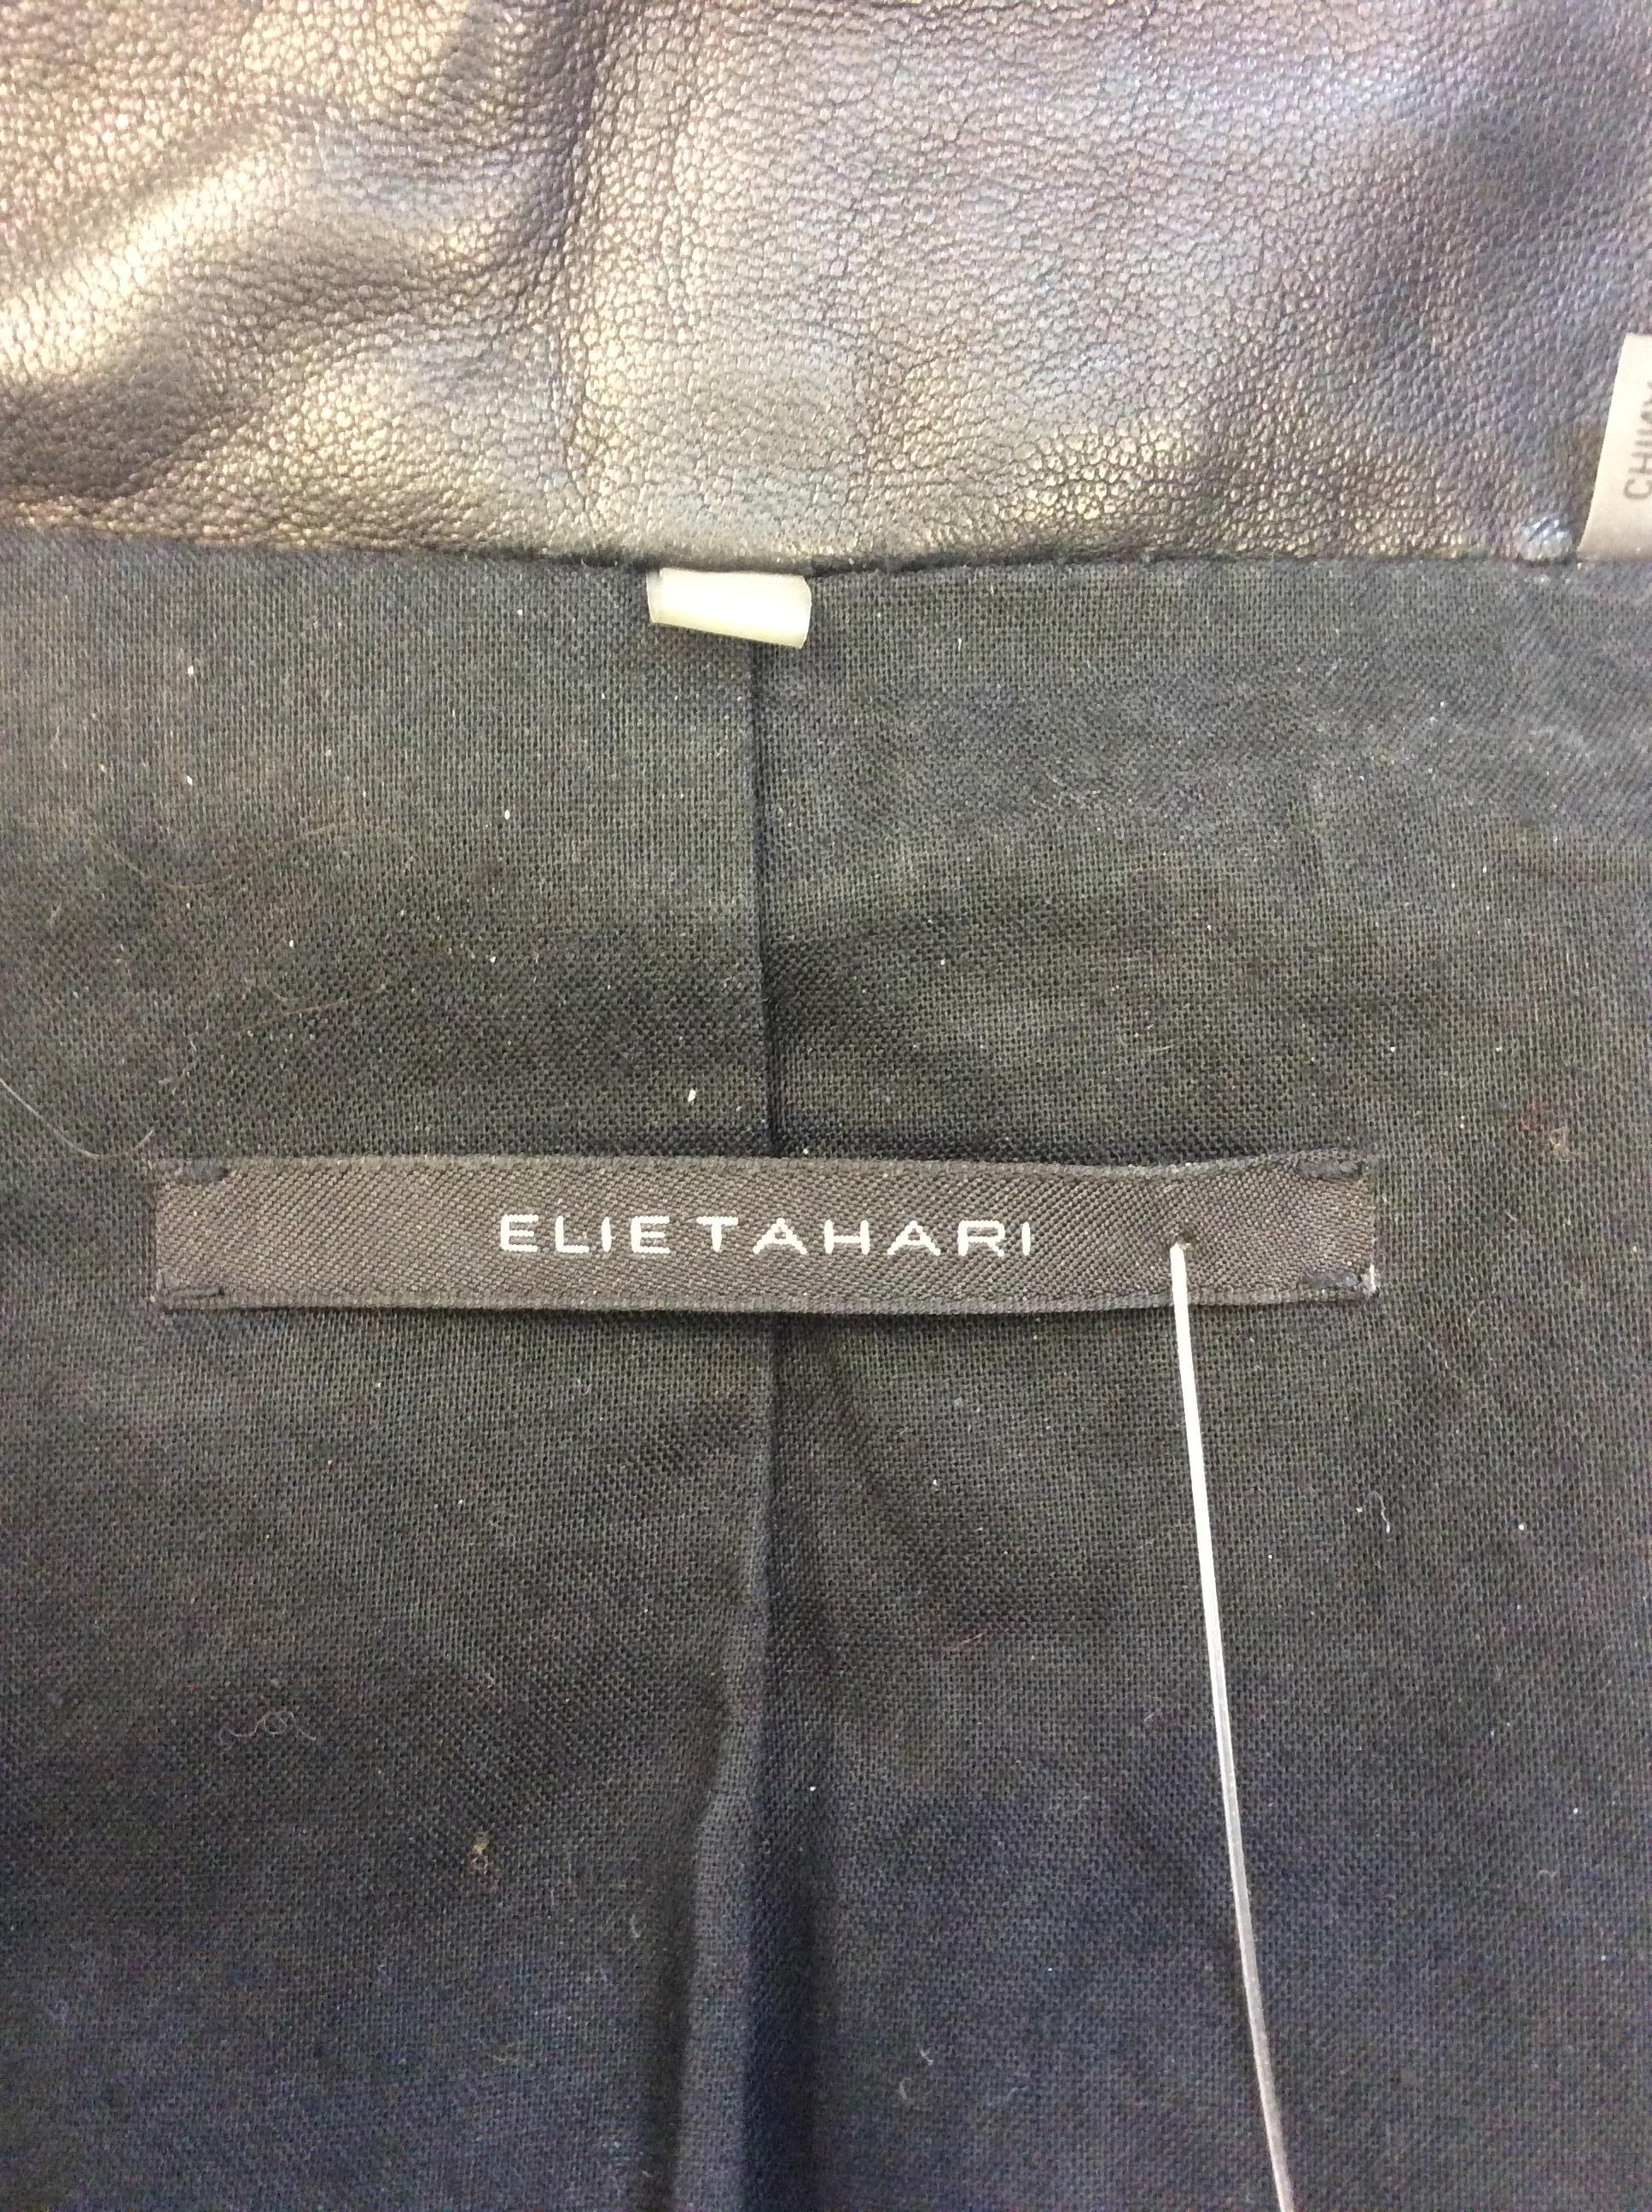 Elie Tahari Black Leather Jacket For Sale 3